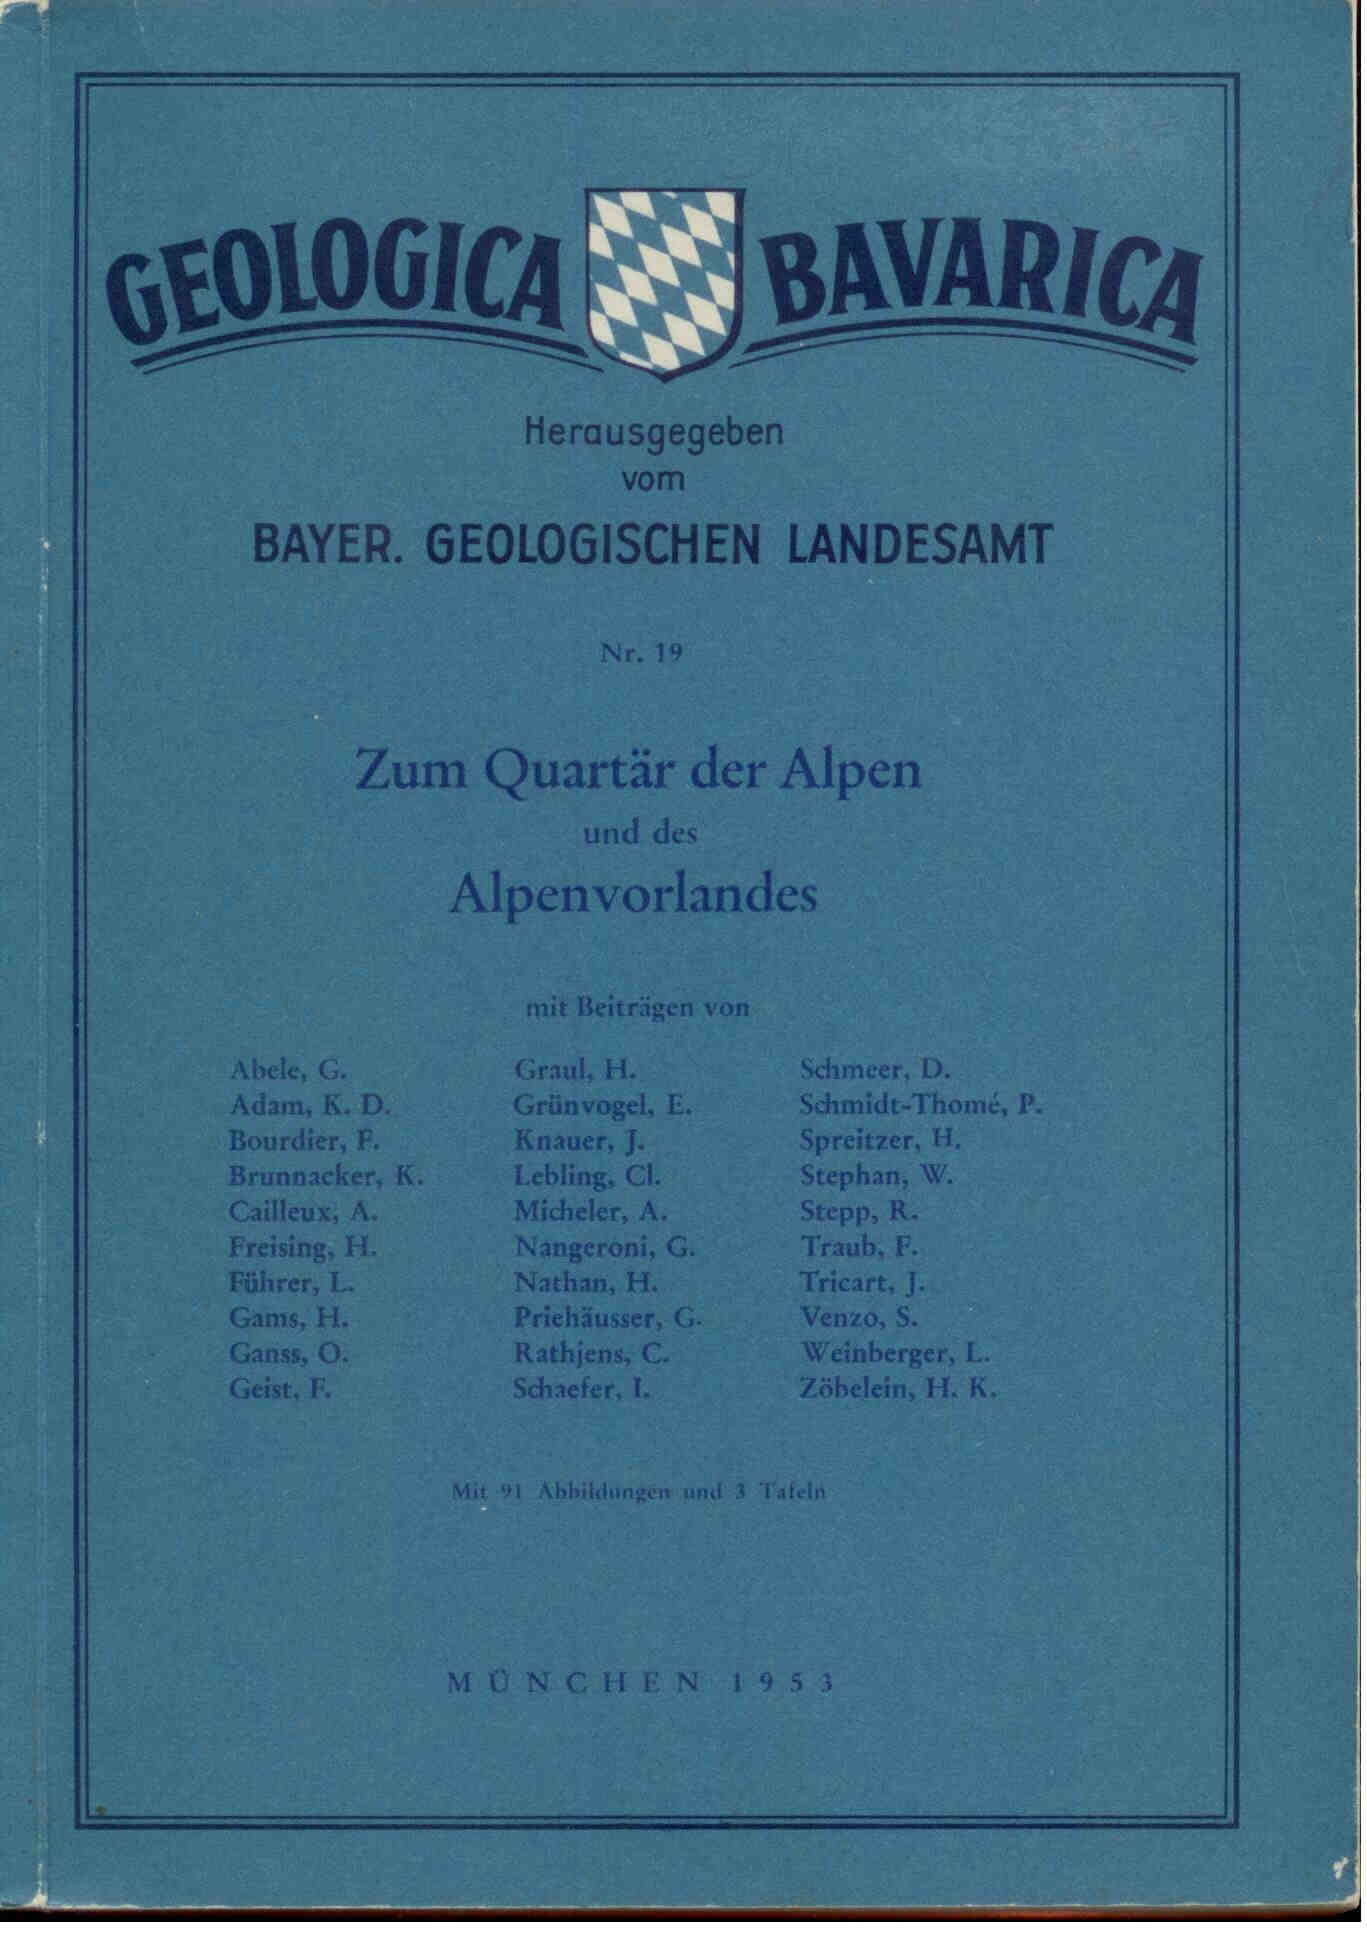 Abele, G.: Zum Quartär der Alpen und des Alpenvorlandes. Geologica Bavarica Nr. 19